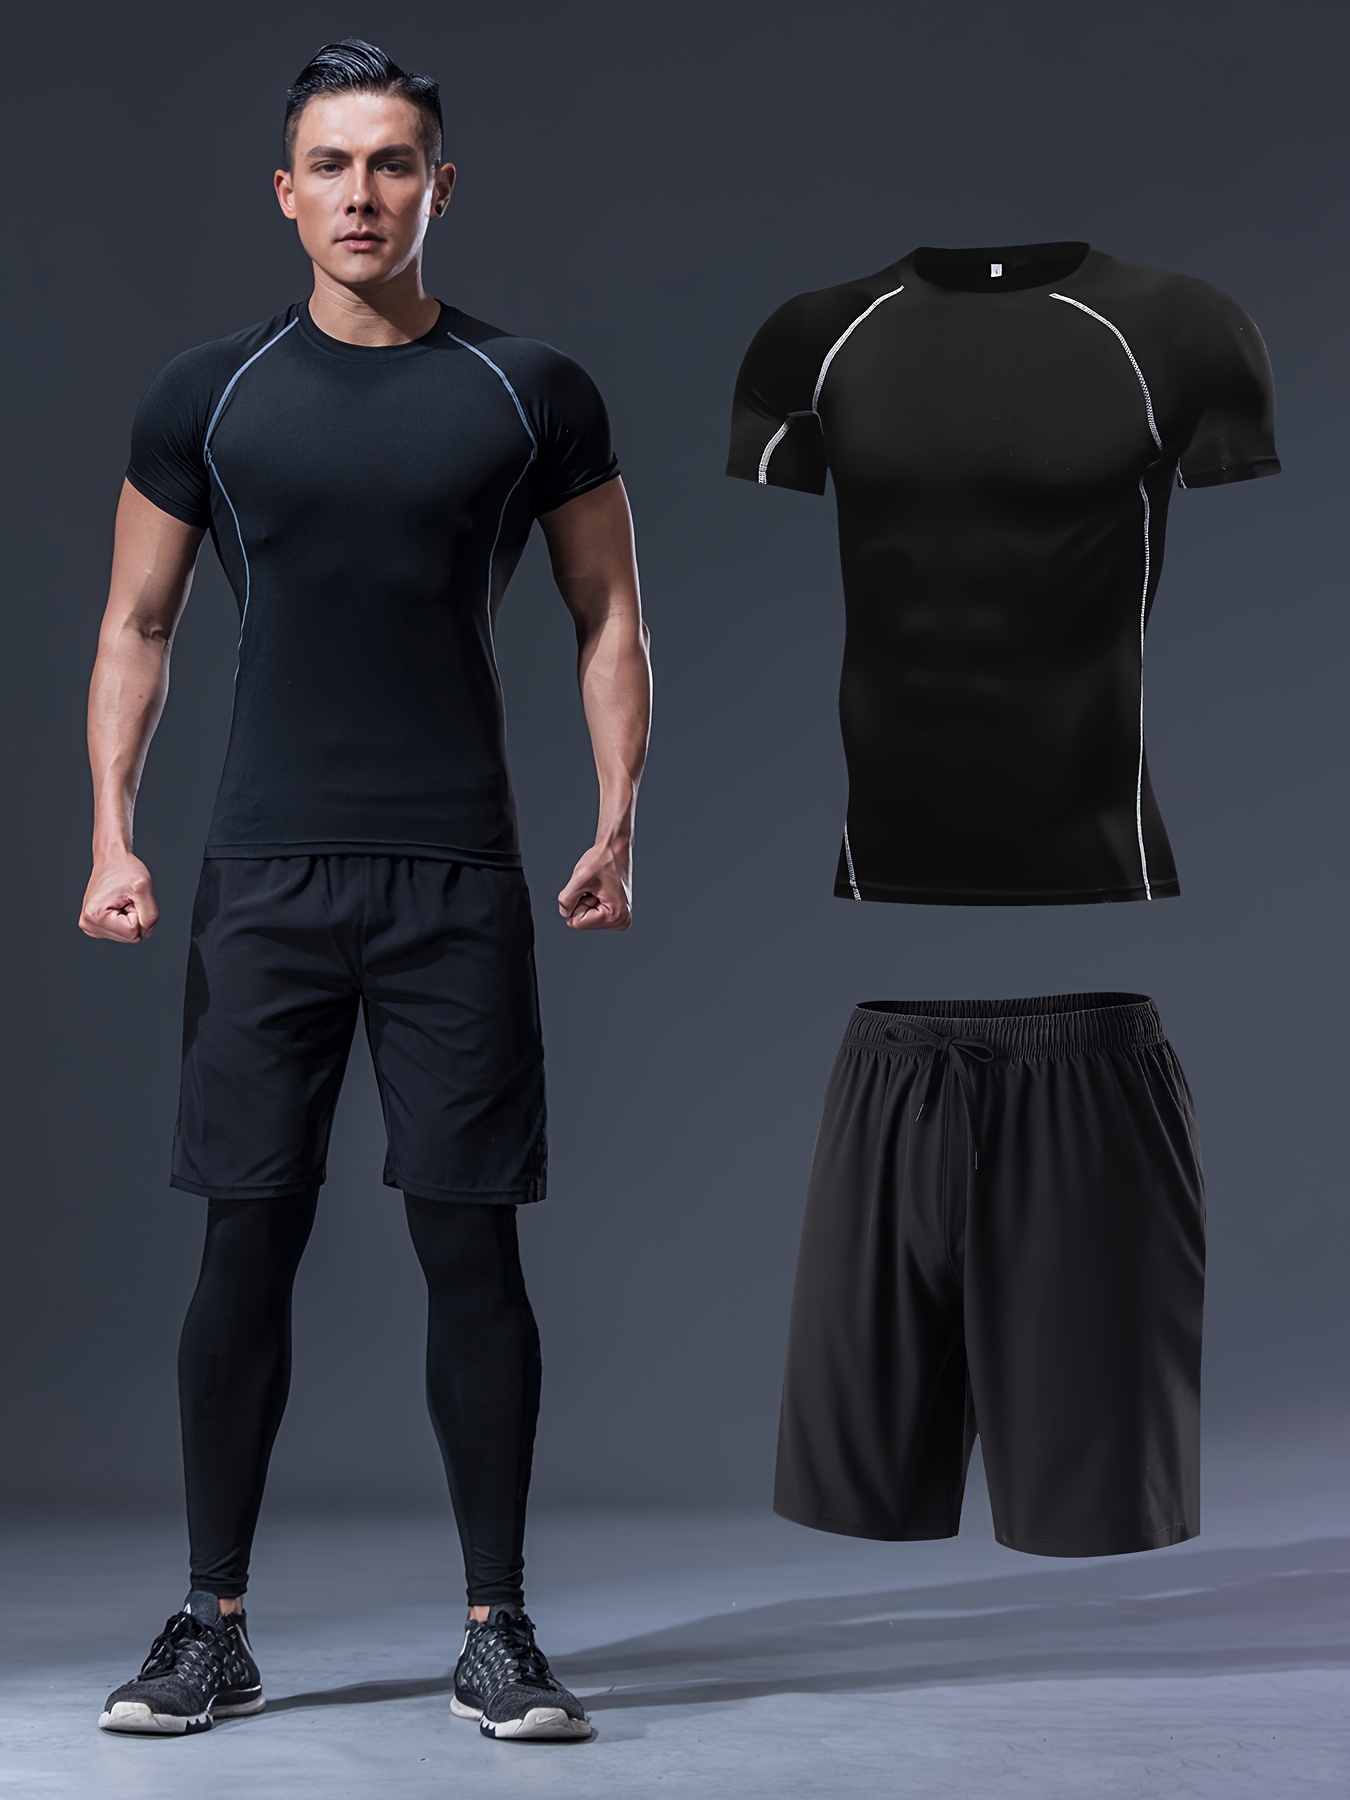 Ropa Deportiva ajustada para hombre, conjuntos deportivos para correr, ropa  deportiva de compresión para gimnasio, pantalones